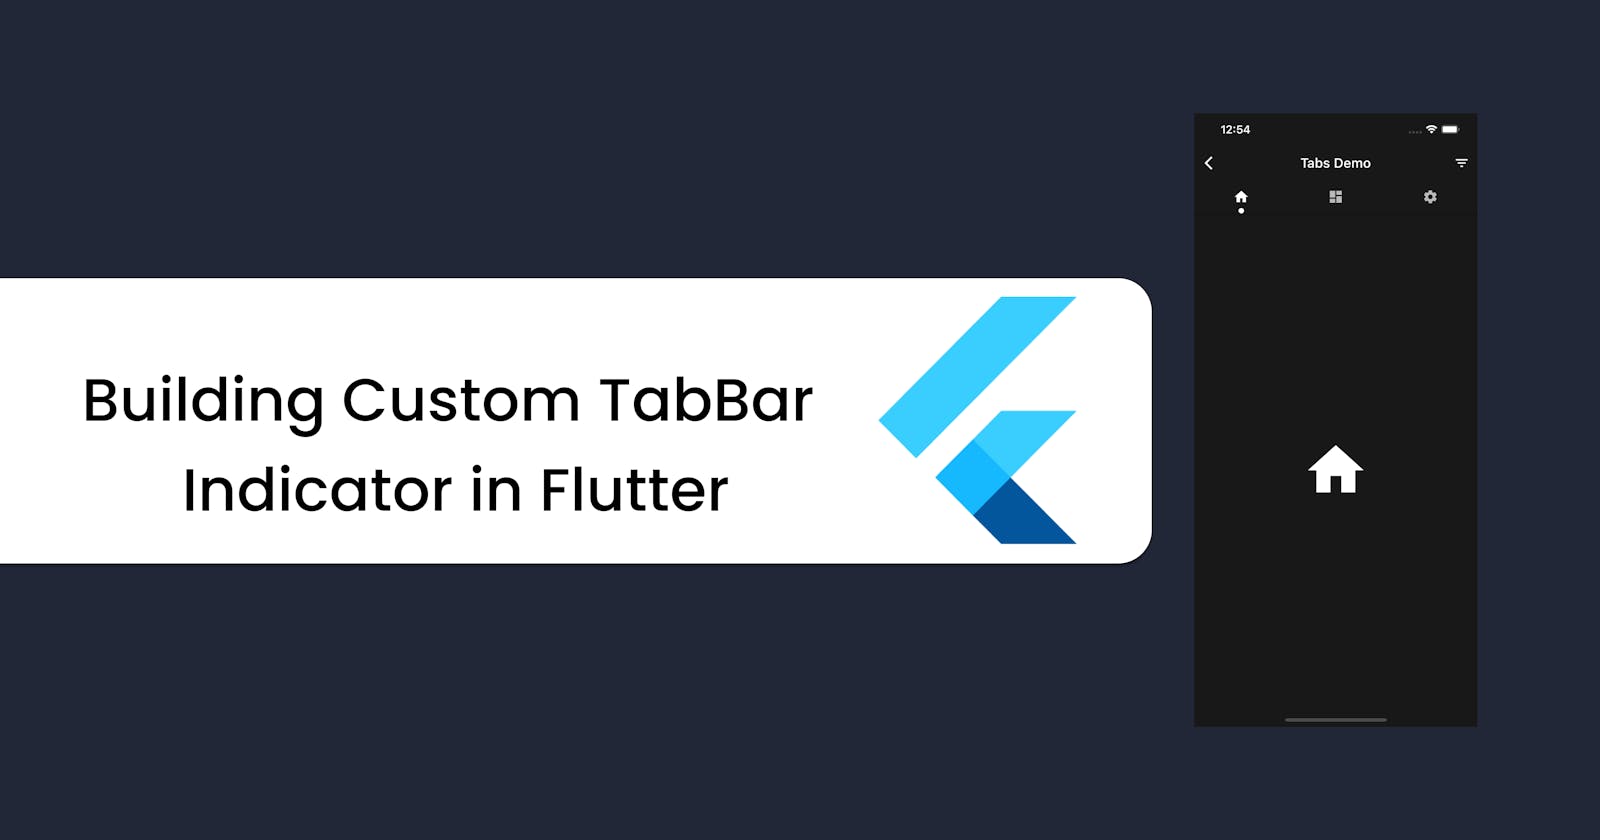 Building Custom TabBar Indicator in Flutter